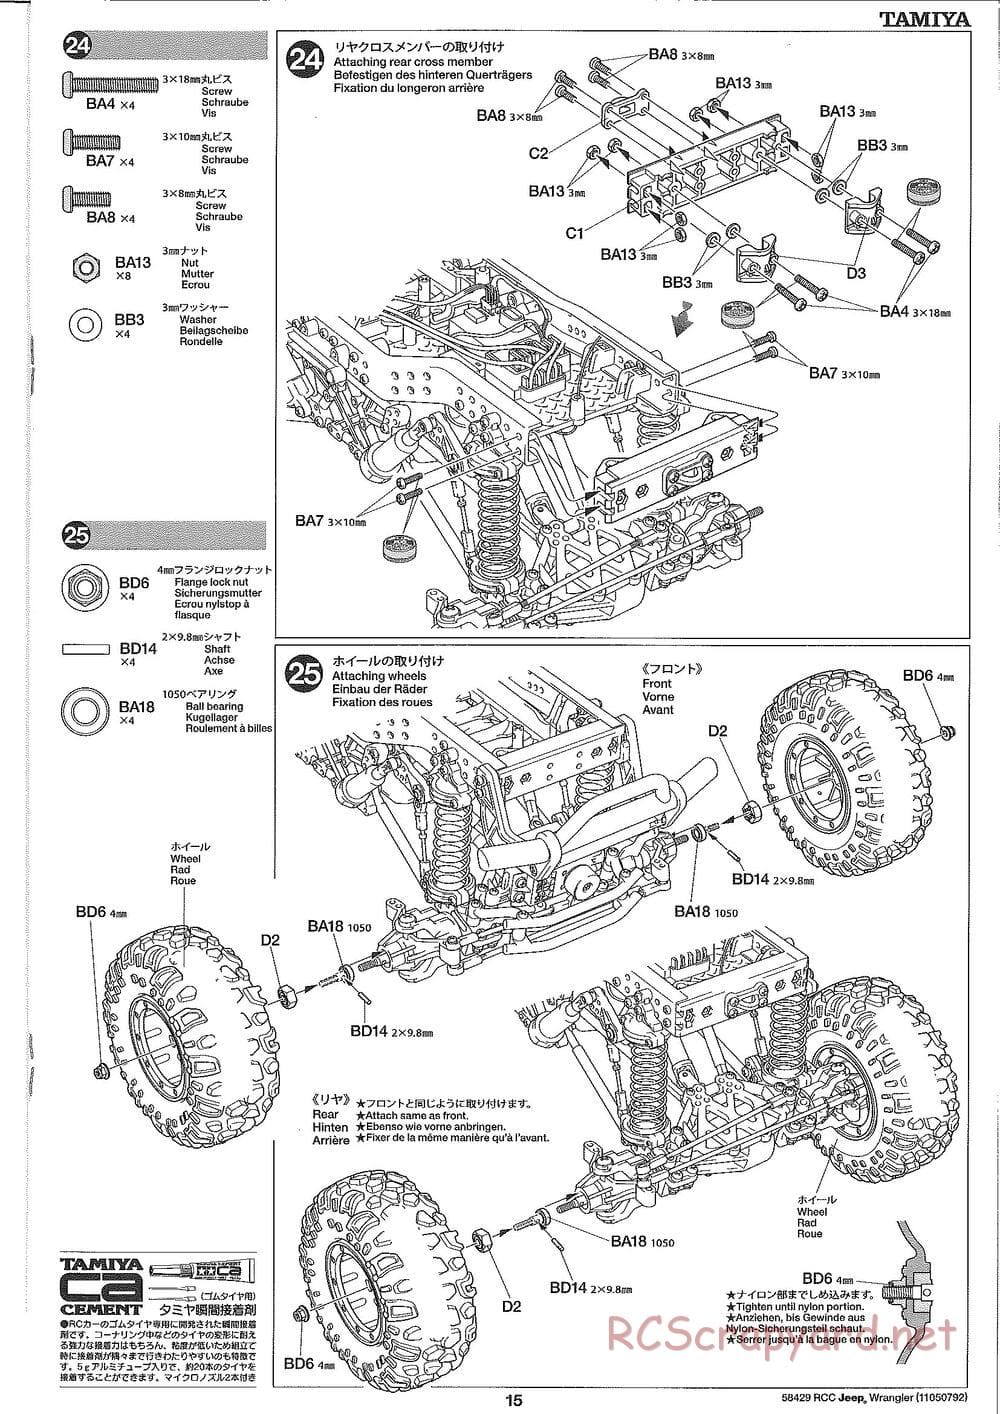 Tamiya - Jeep Wrangler - CR-01 Chassis - Manual - Page 15